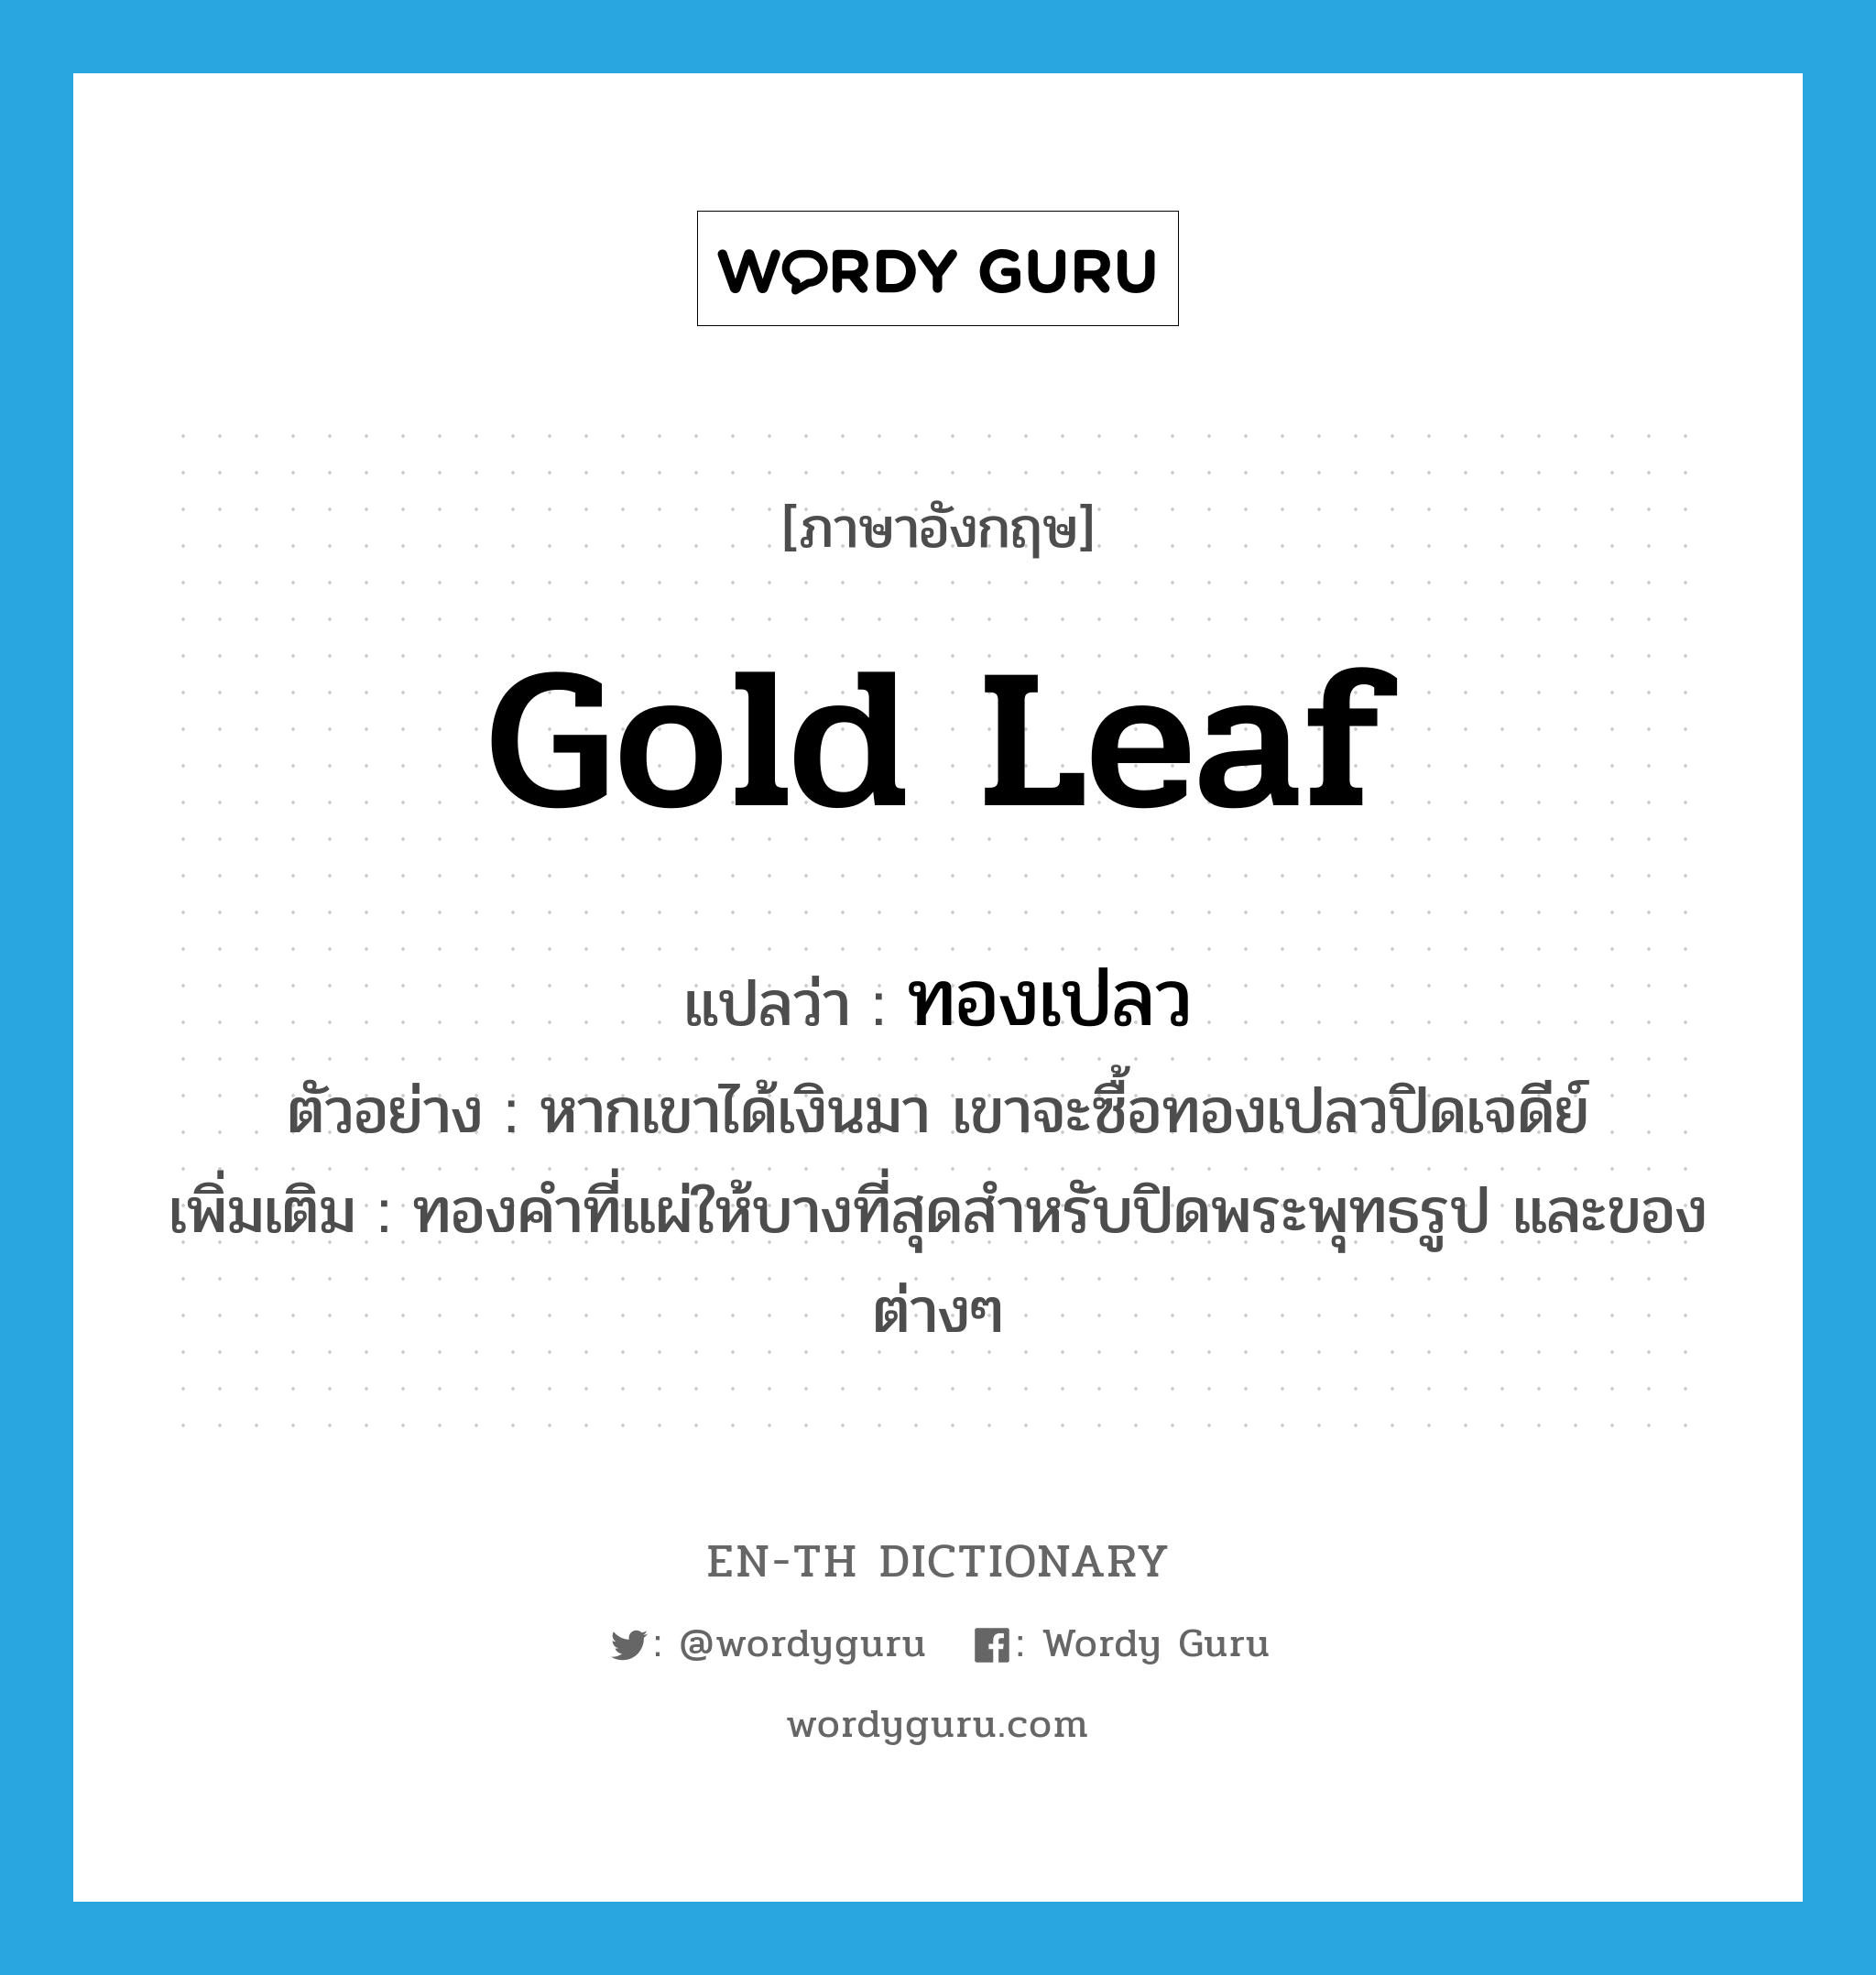 gold leaf แปลว่า?, คำศัพท์ภาษาอังกฤษ gold leaf แปลว่า ทองเปลว ประเภท N ตัวอย่าง หากเขาได้เงินมา เขาจะซื้อทองเปลวปิดเจดีย์ เพิ่มเติม ทองคำที่แผ่ให้บางที่สุดสำหรับปิดพระพุทธรูป และของต่างๆ หมวด N